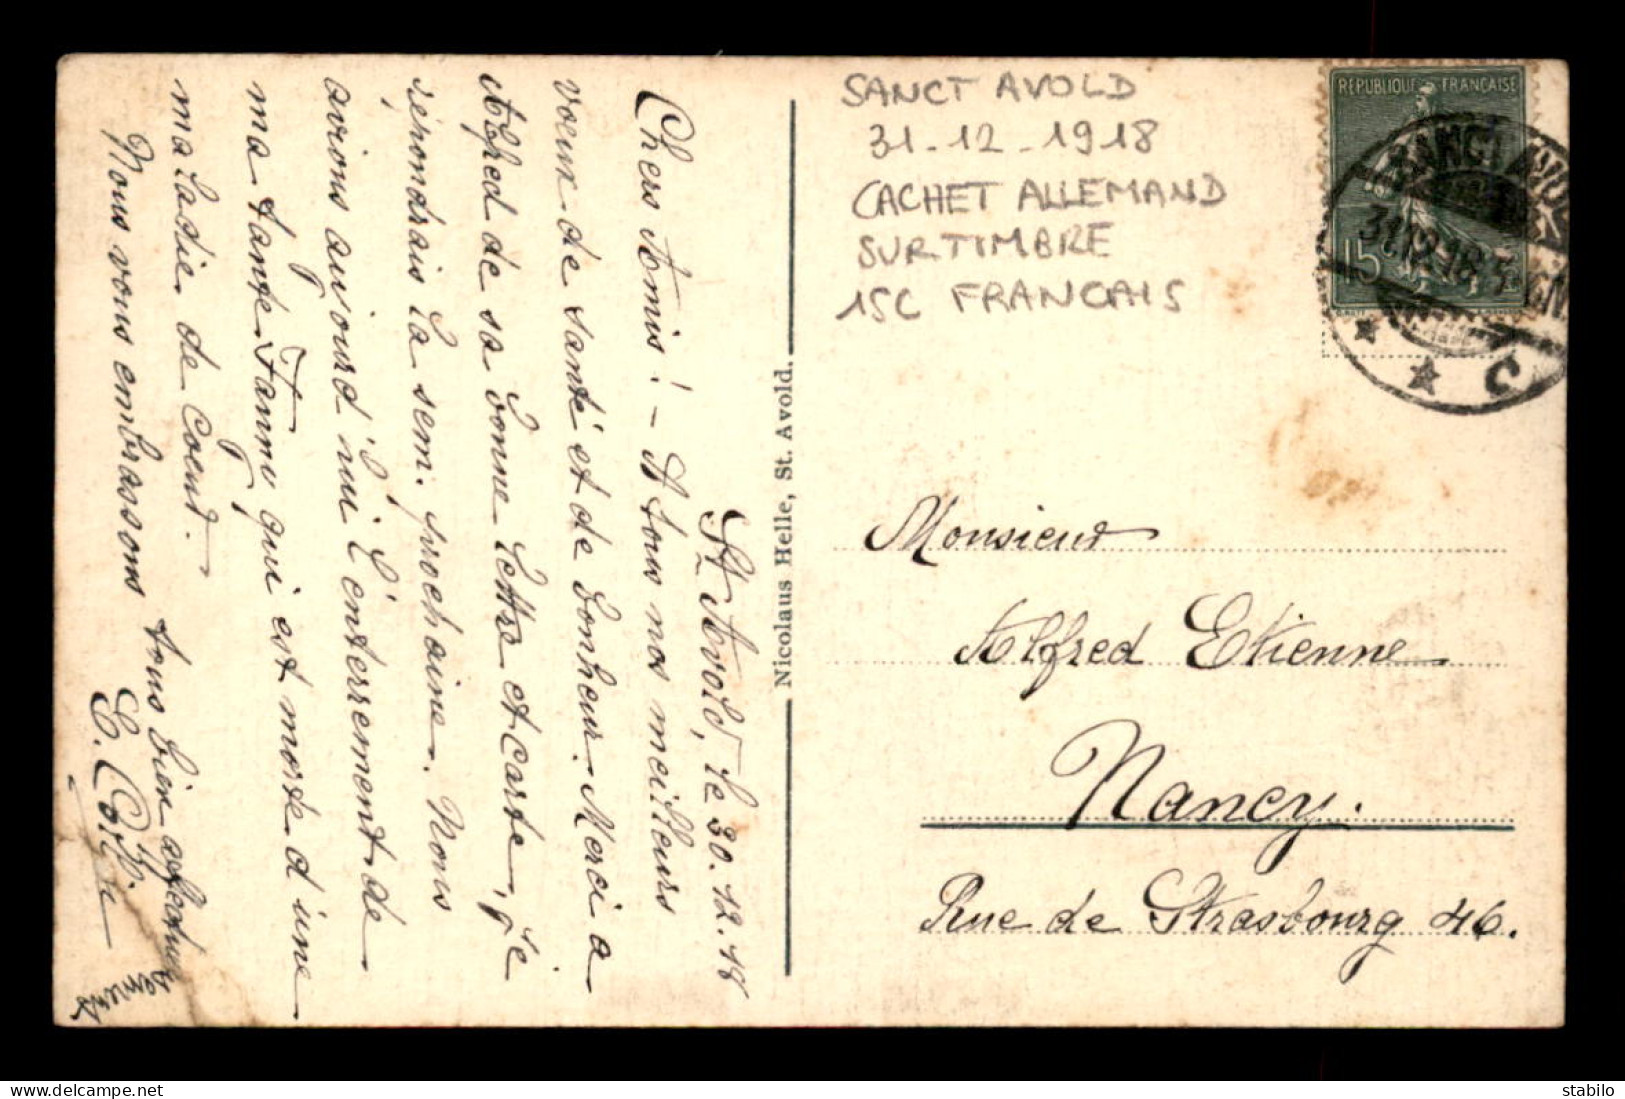 CACHET ALLEMAND "SANCT AVOLD" DU 31.12.1918 SUR TIMBRE FRANCAIS DE 15 CENTIMES - Tijdelijke Stempels